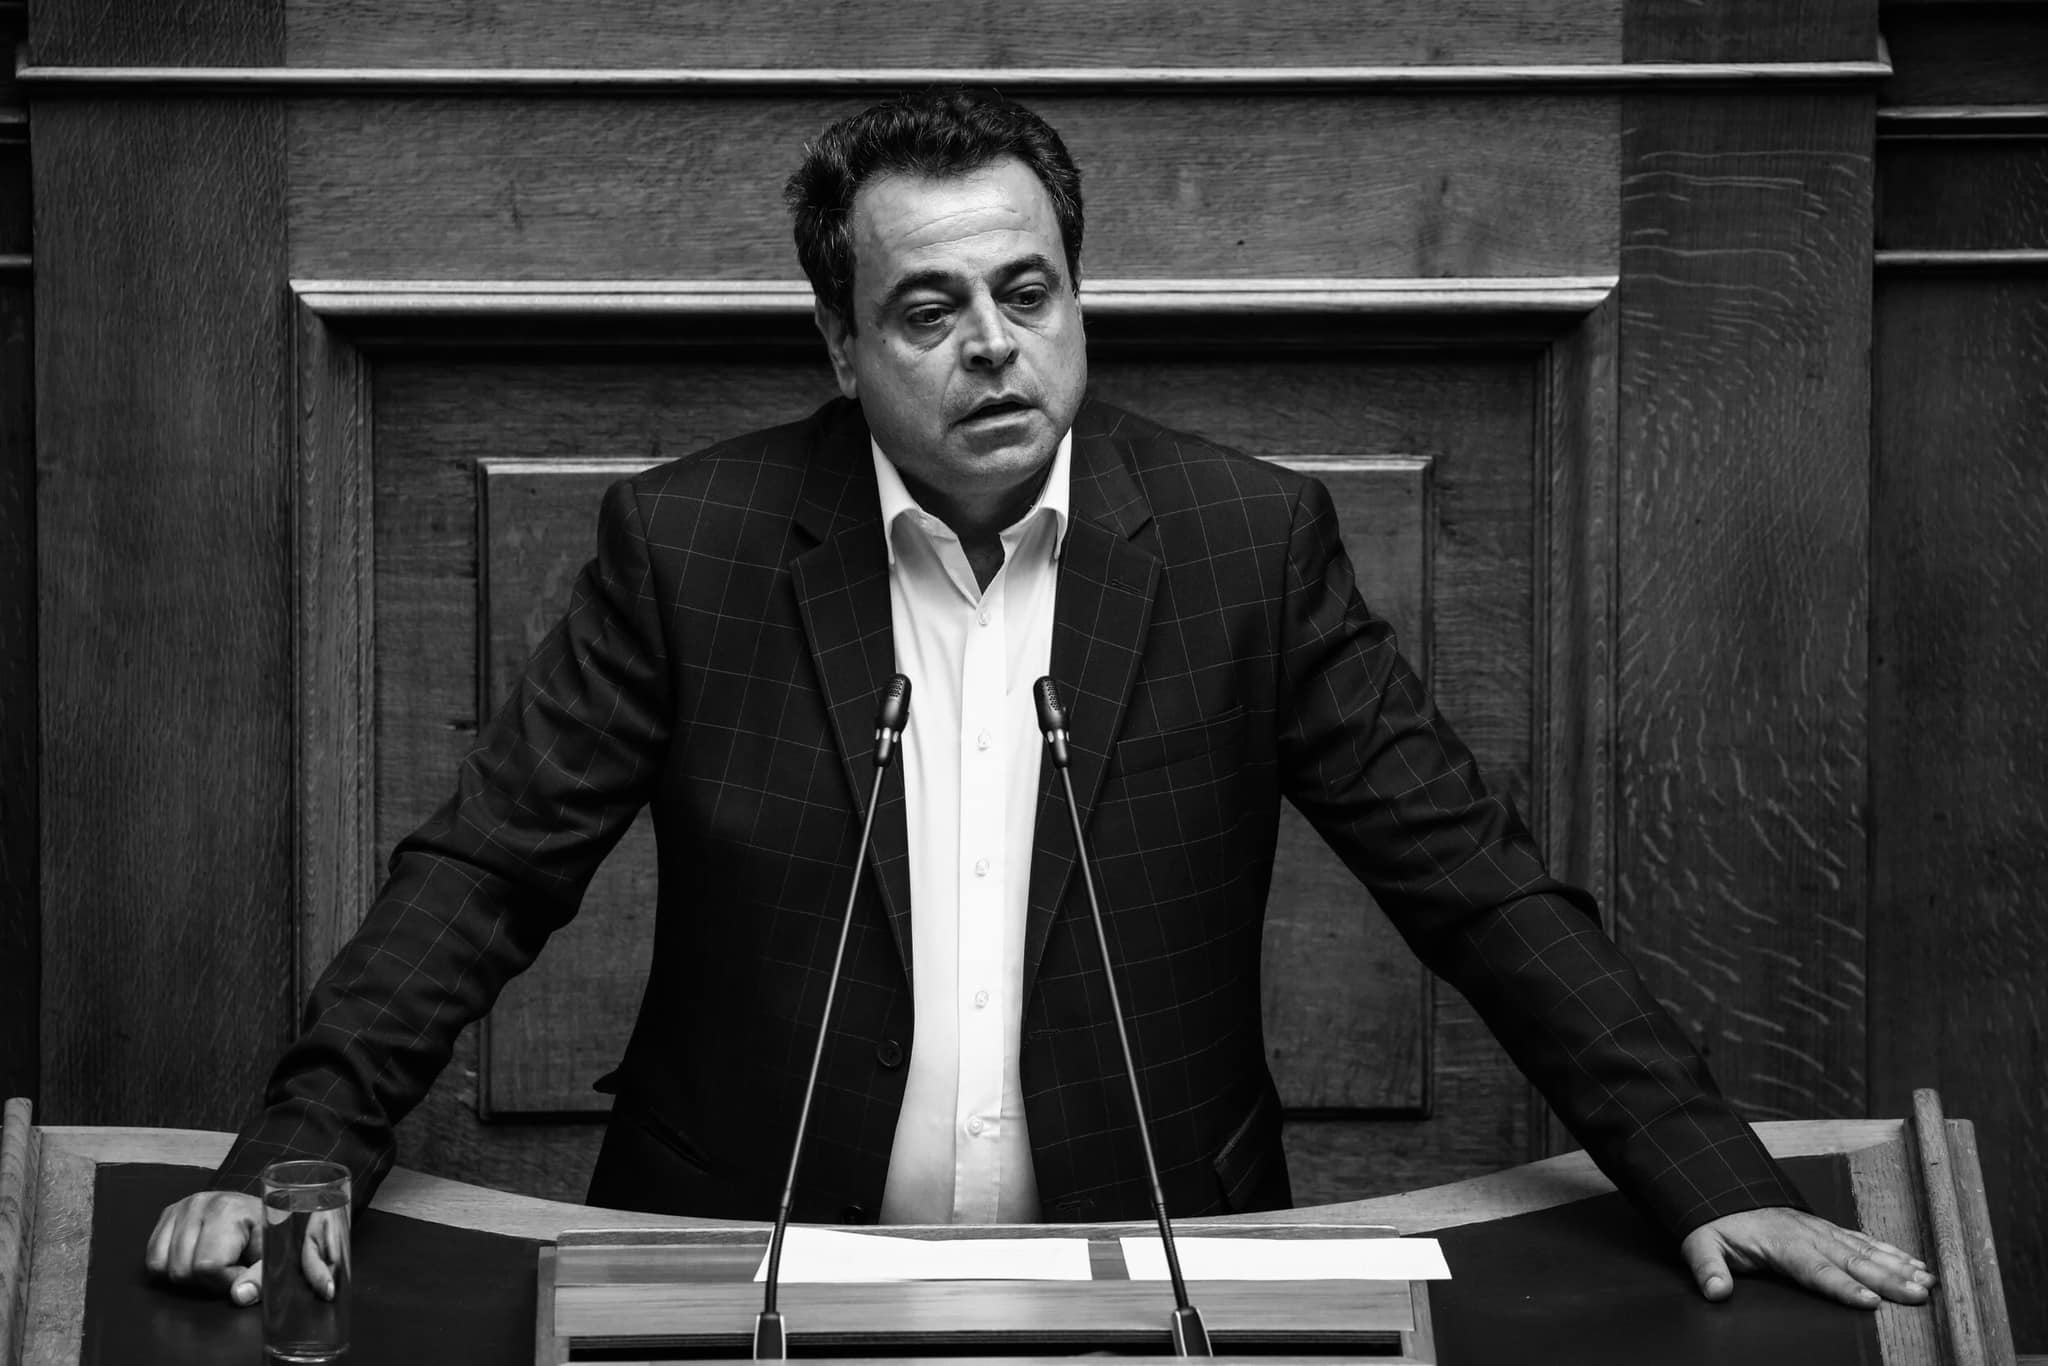 Χατζηγιαννάκης: Το μήνυμα του βουλευτή Ευβοίας για τον θάνατο του Νεκτάριου Σαντορινιού